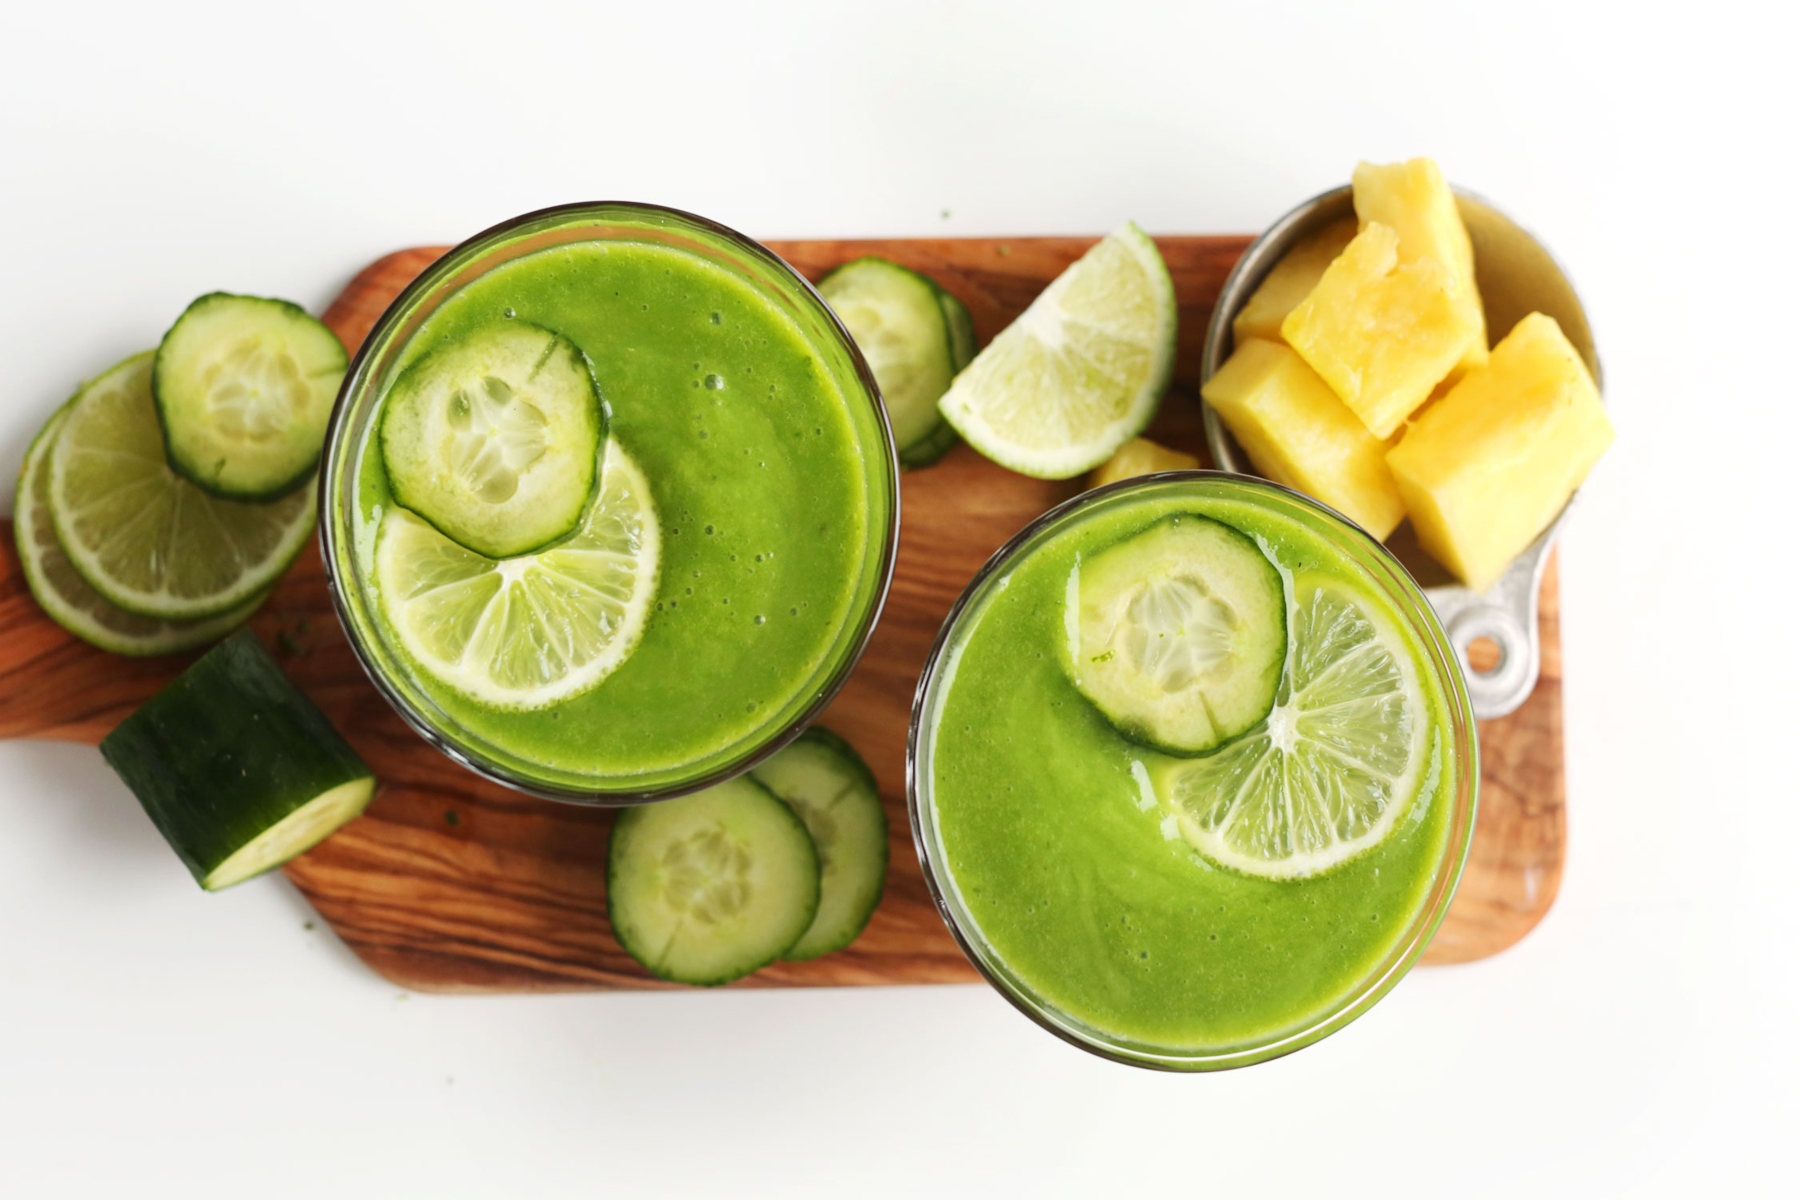 Αγγούρι ανανάς: Γιατί ο χυμός αγγουριού με ανανά είναι ένας ισχυρός συνδυασμός για τον καθένα;